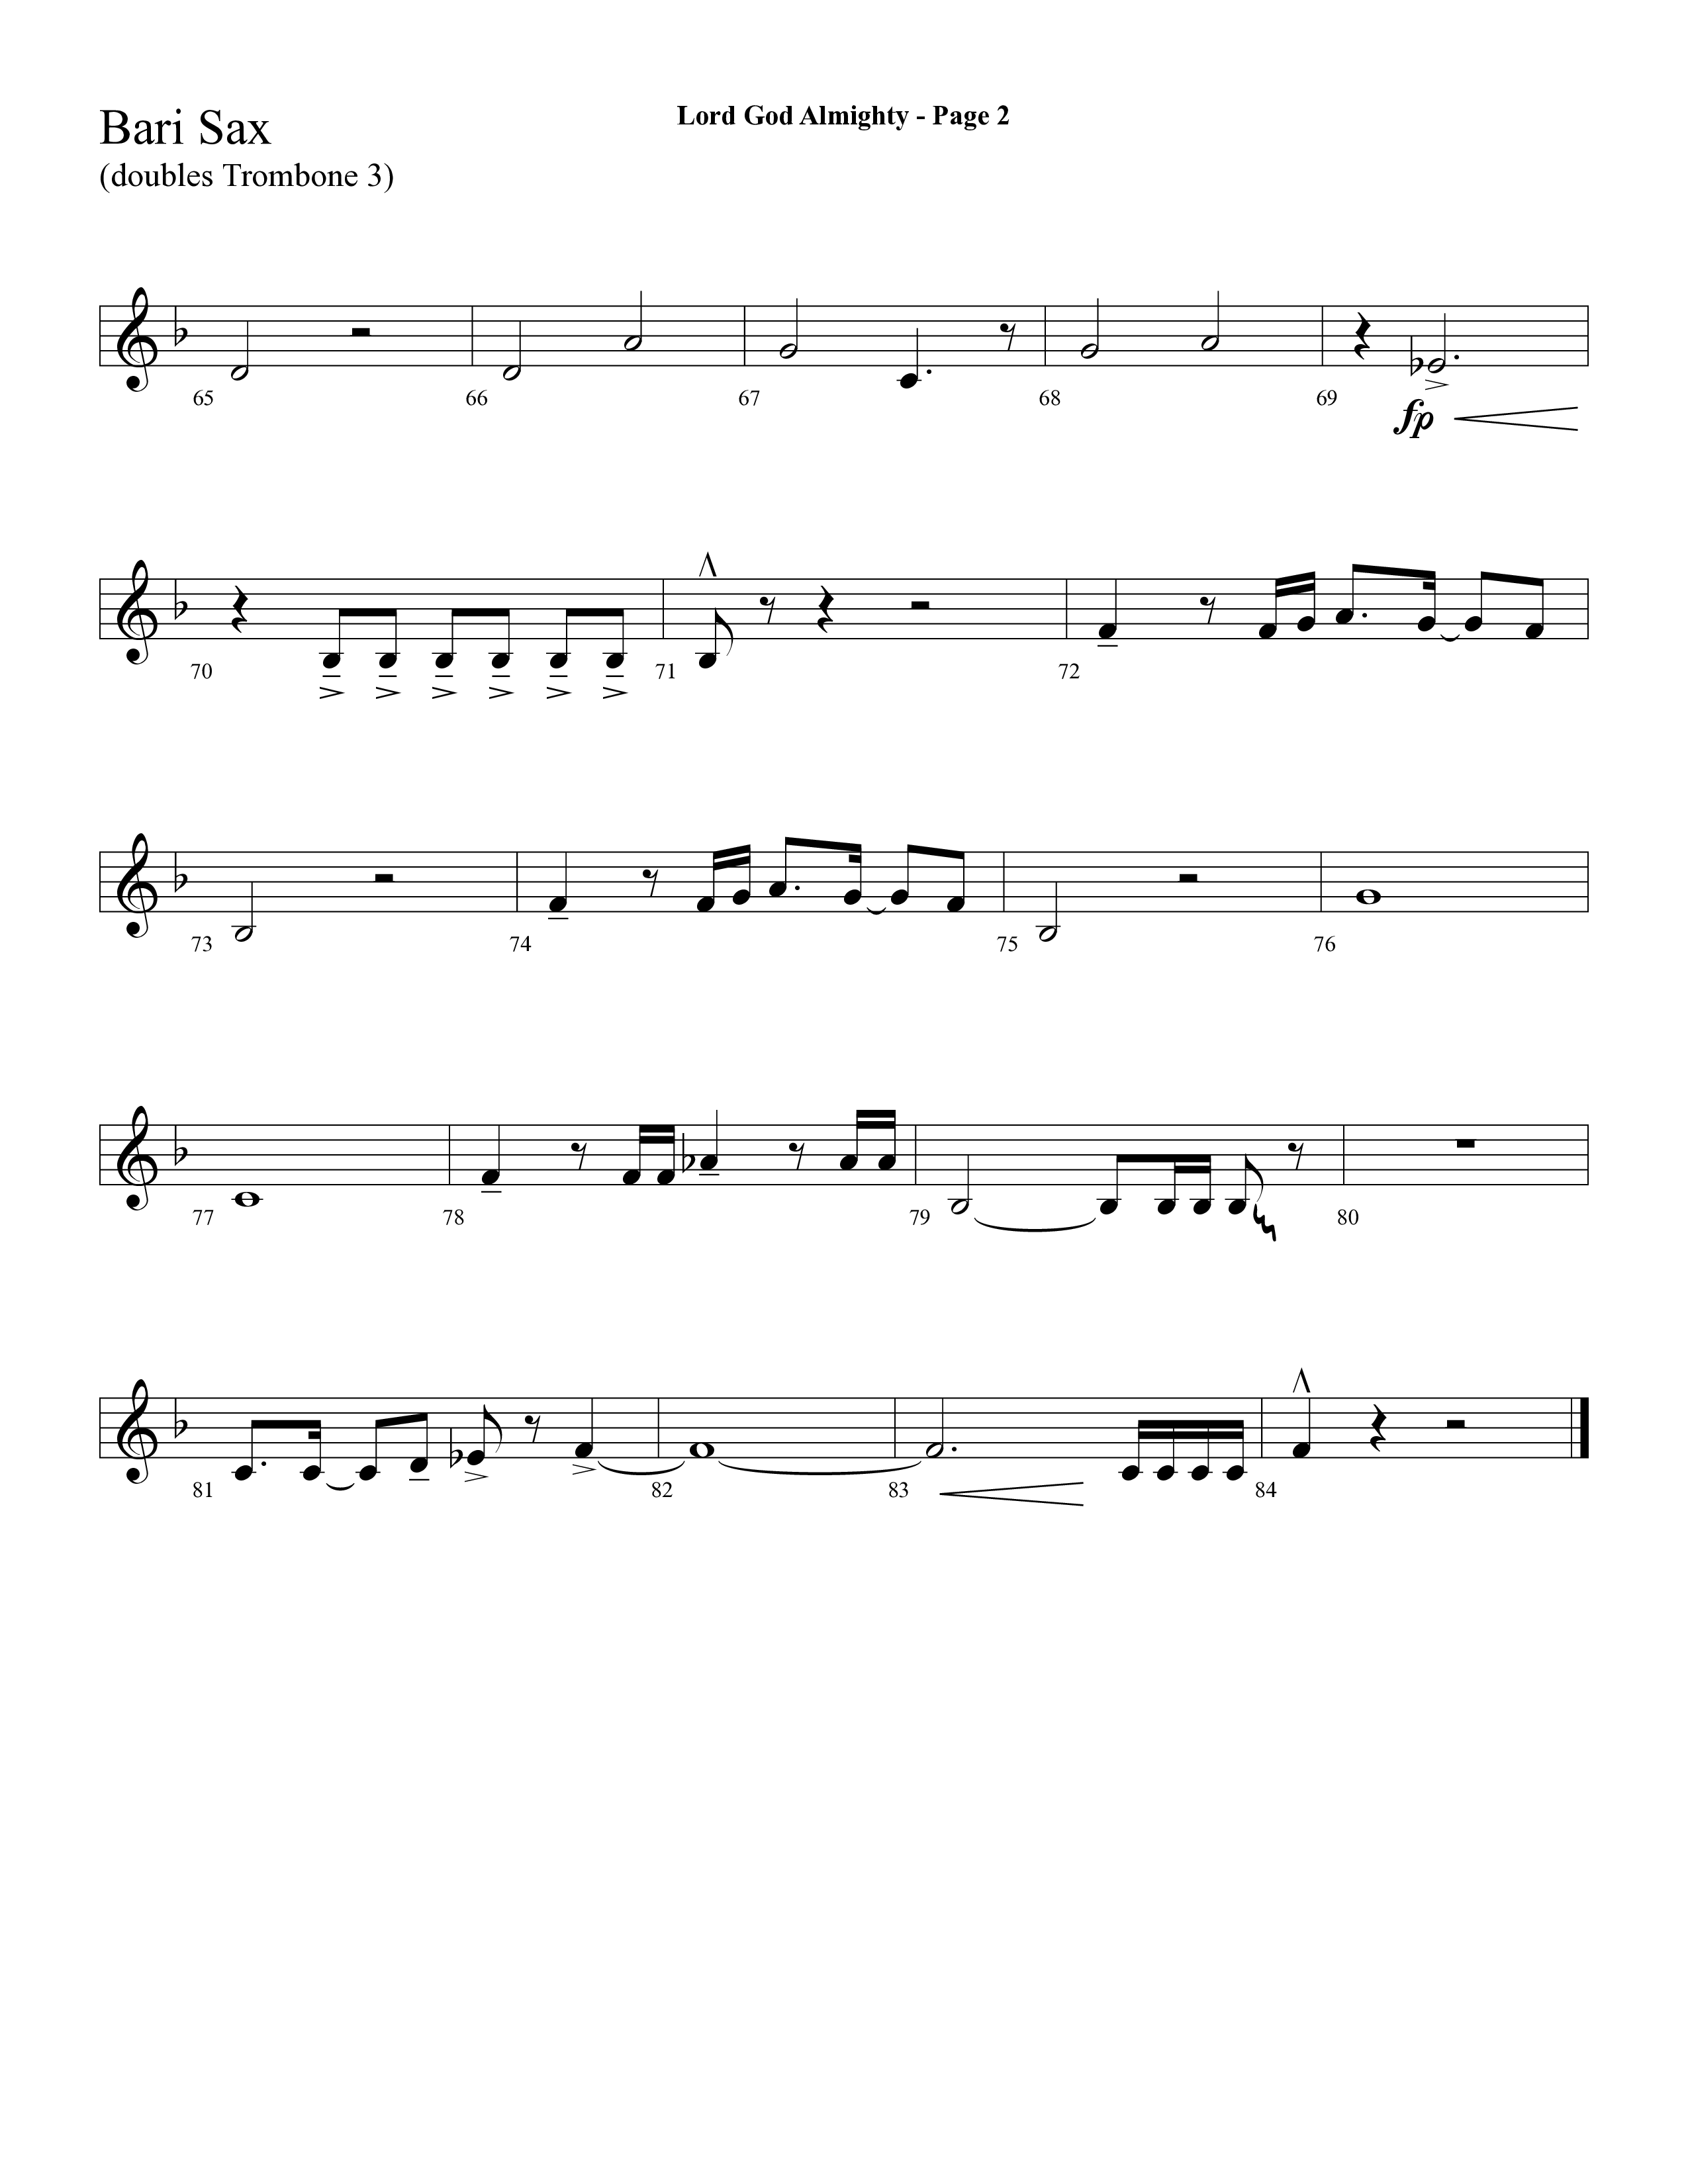 Lord God Almighty (Choral Anthem SATB) Bari Sax (Lifeway Choral / Arr. Dave Williamson)